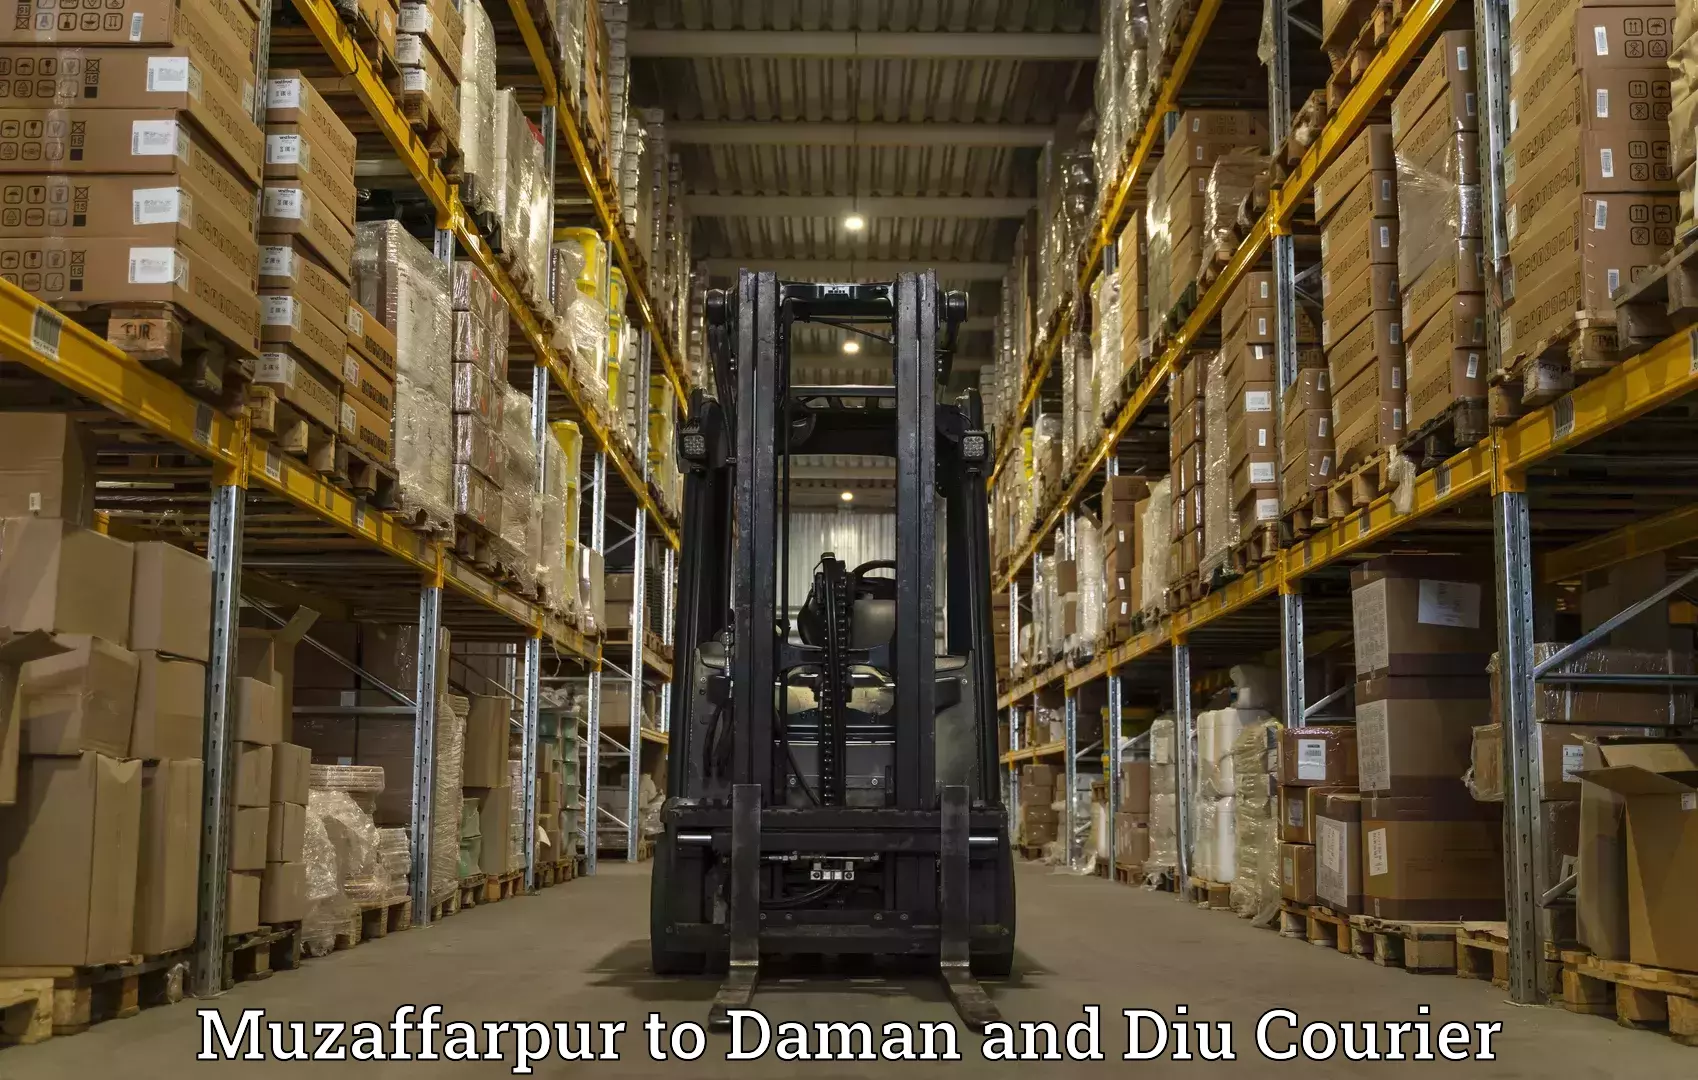 Special handling courier Muzaffarpur to Diu